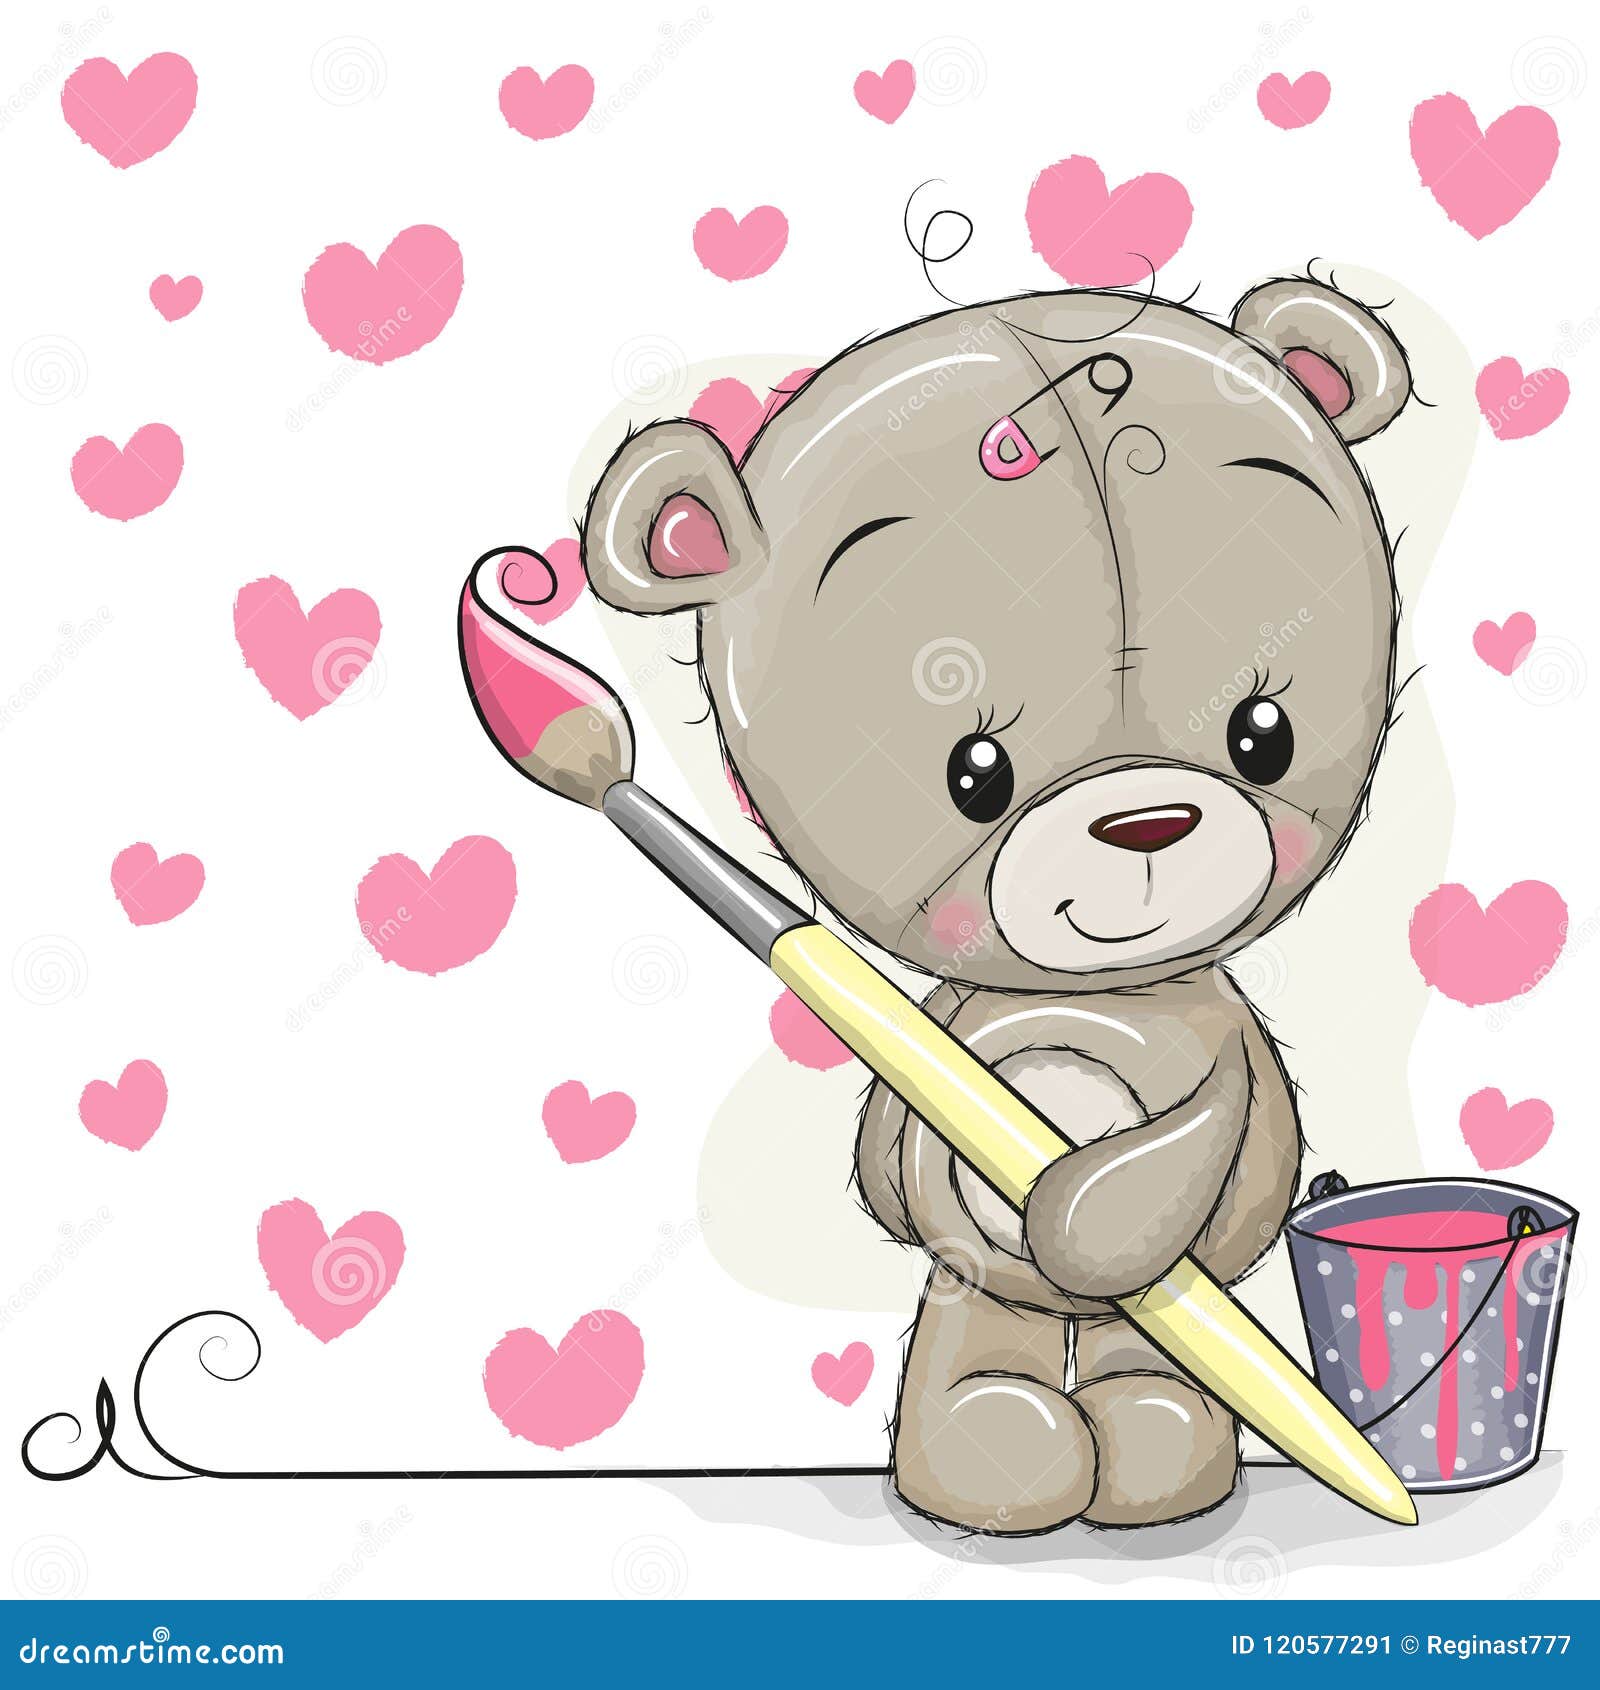 teddy bear brush drawing hearts cute teddy bear brush drawing hearts 120577291